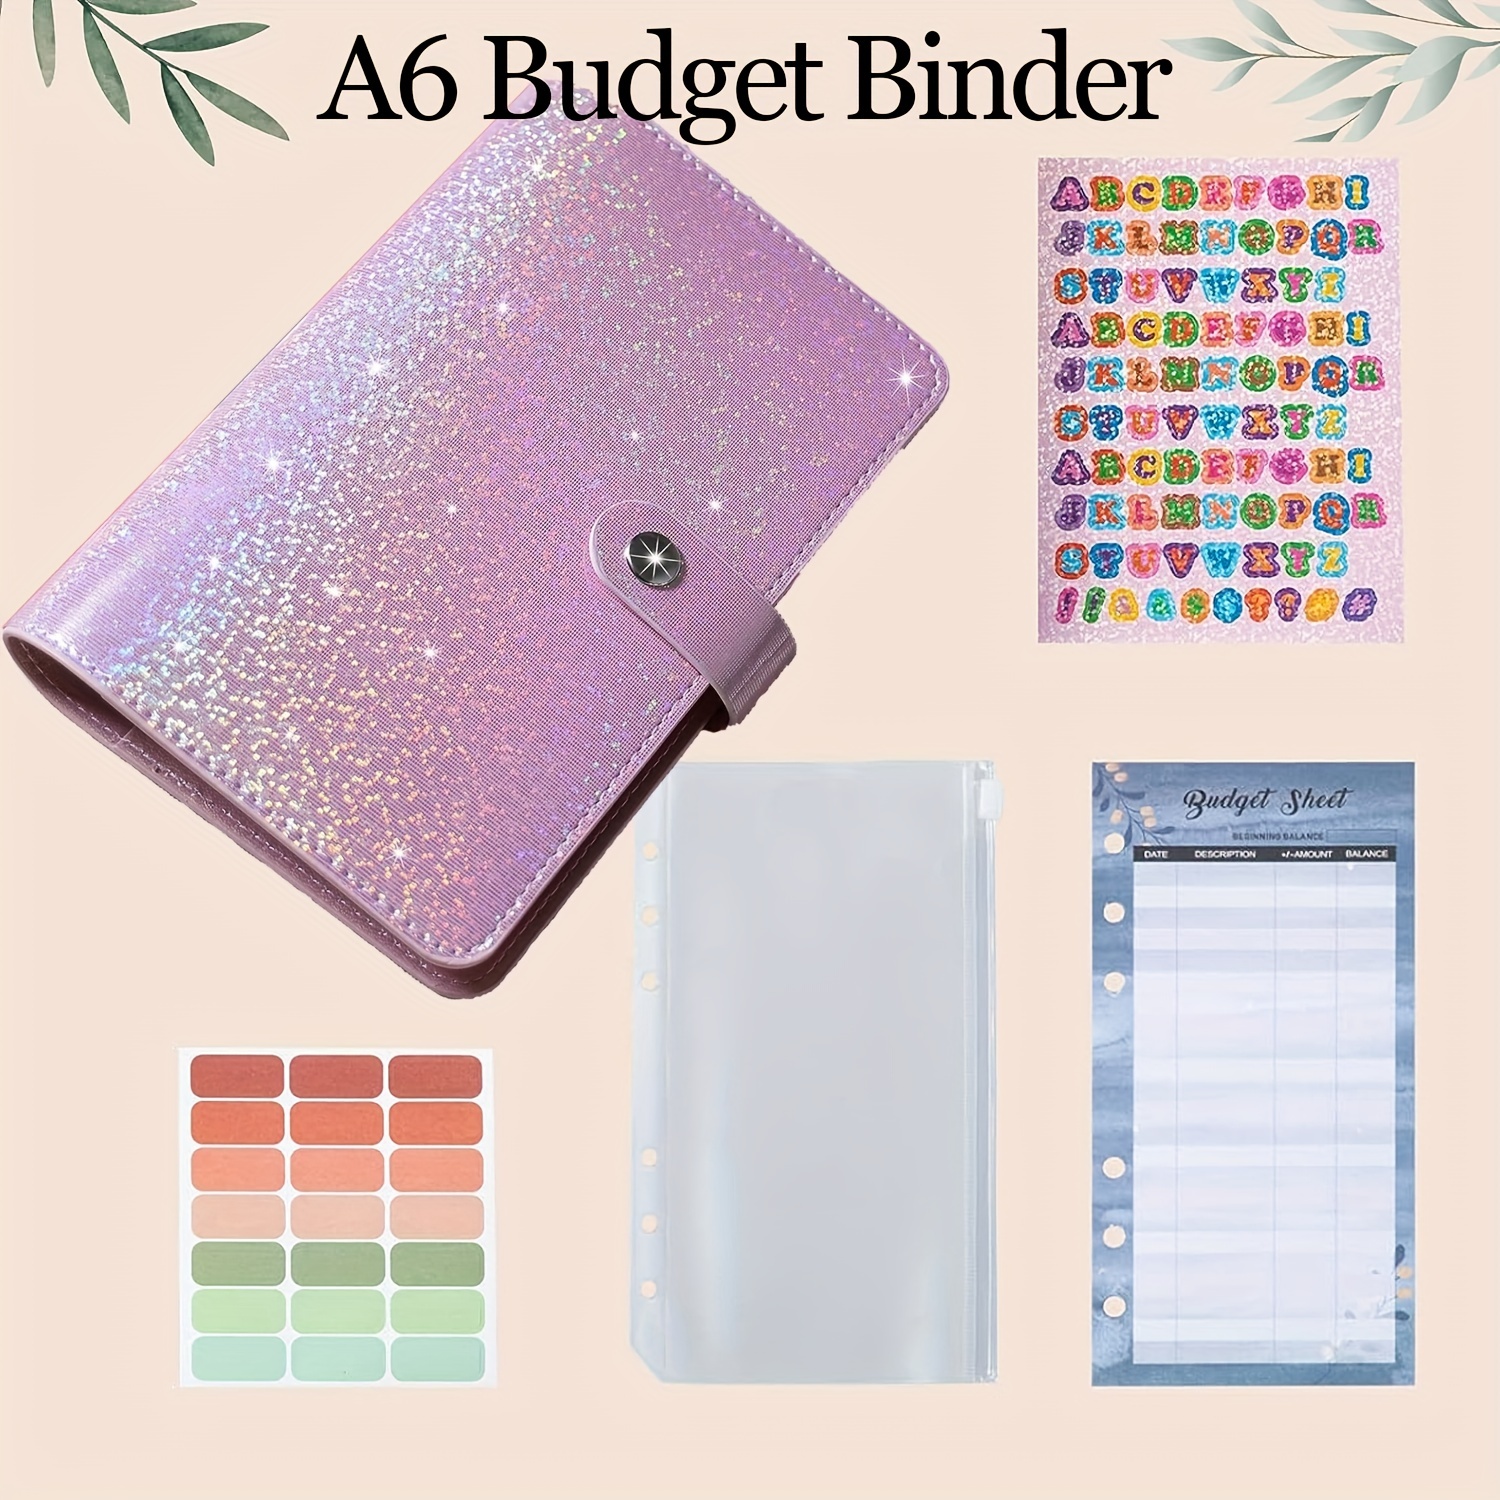 A6 Money Budget ,Cash Stuffing Budget Wallet Planner Binder with Cash Envelope, Money Folder Wallet Organiser, Other